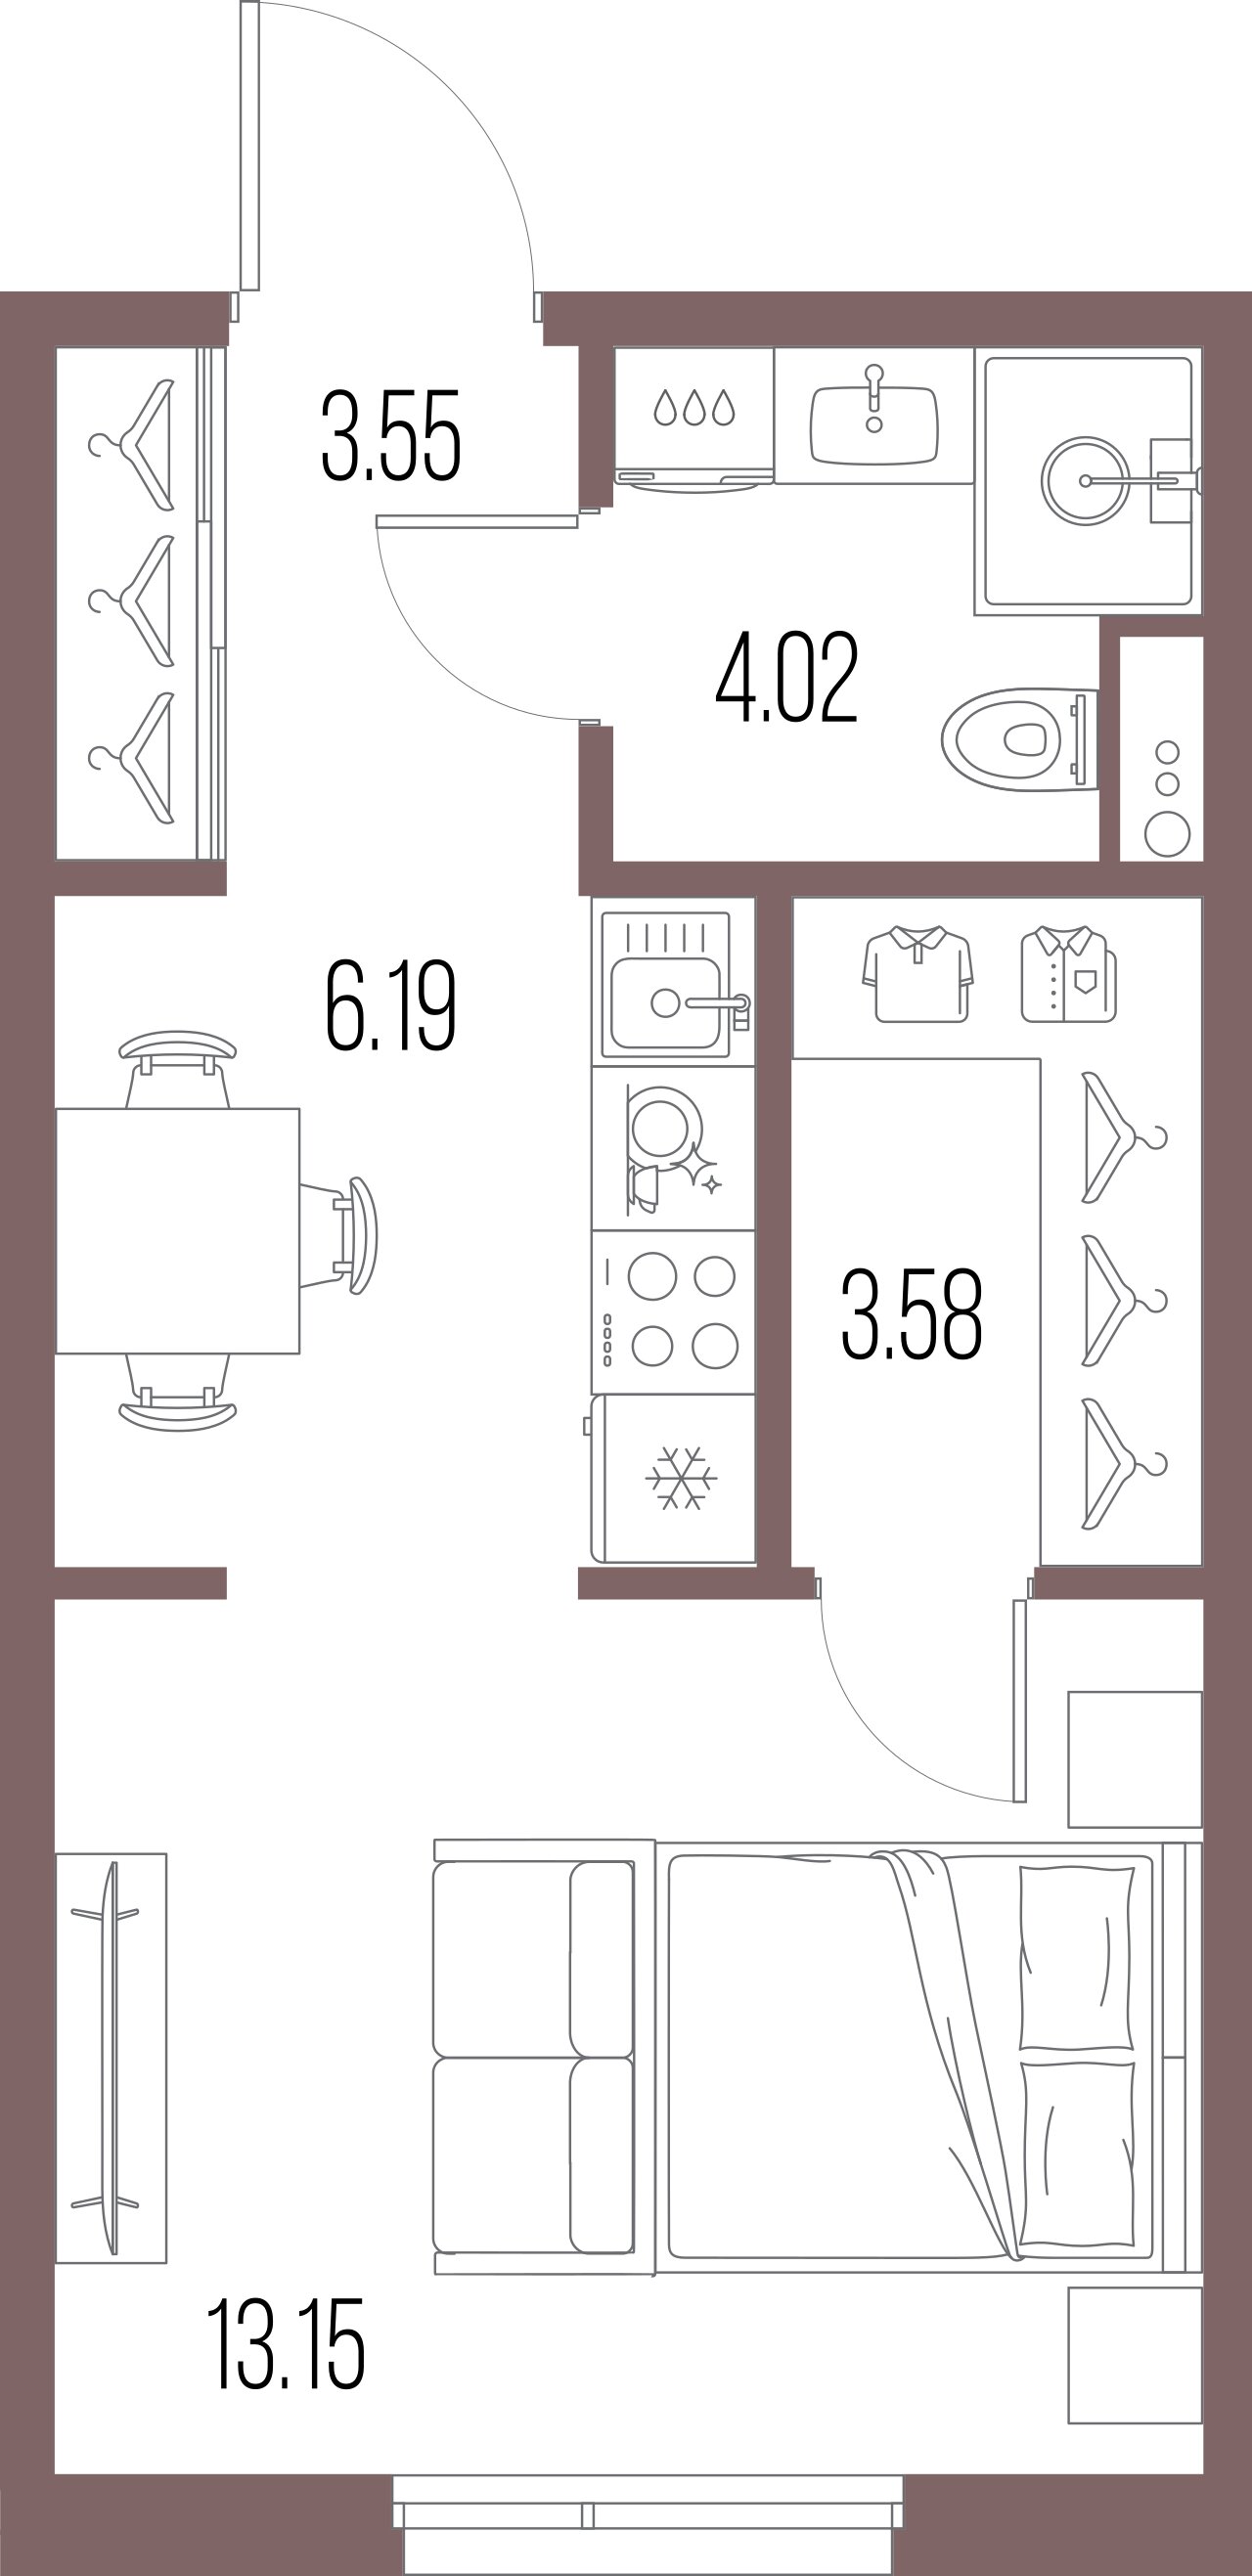 1-комнатная квартира №8 в: Legenda Васильевского: 30.49 м²; этаж: 10 - купить в Санкт-Петербурге